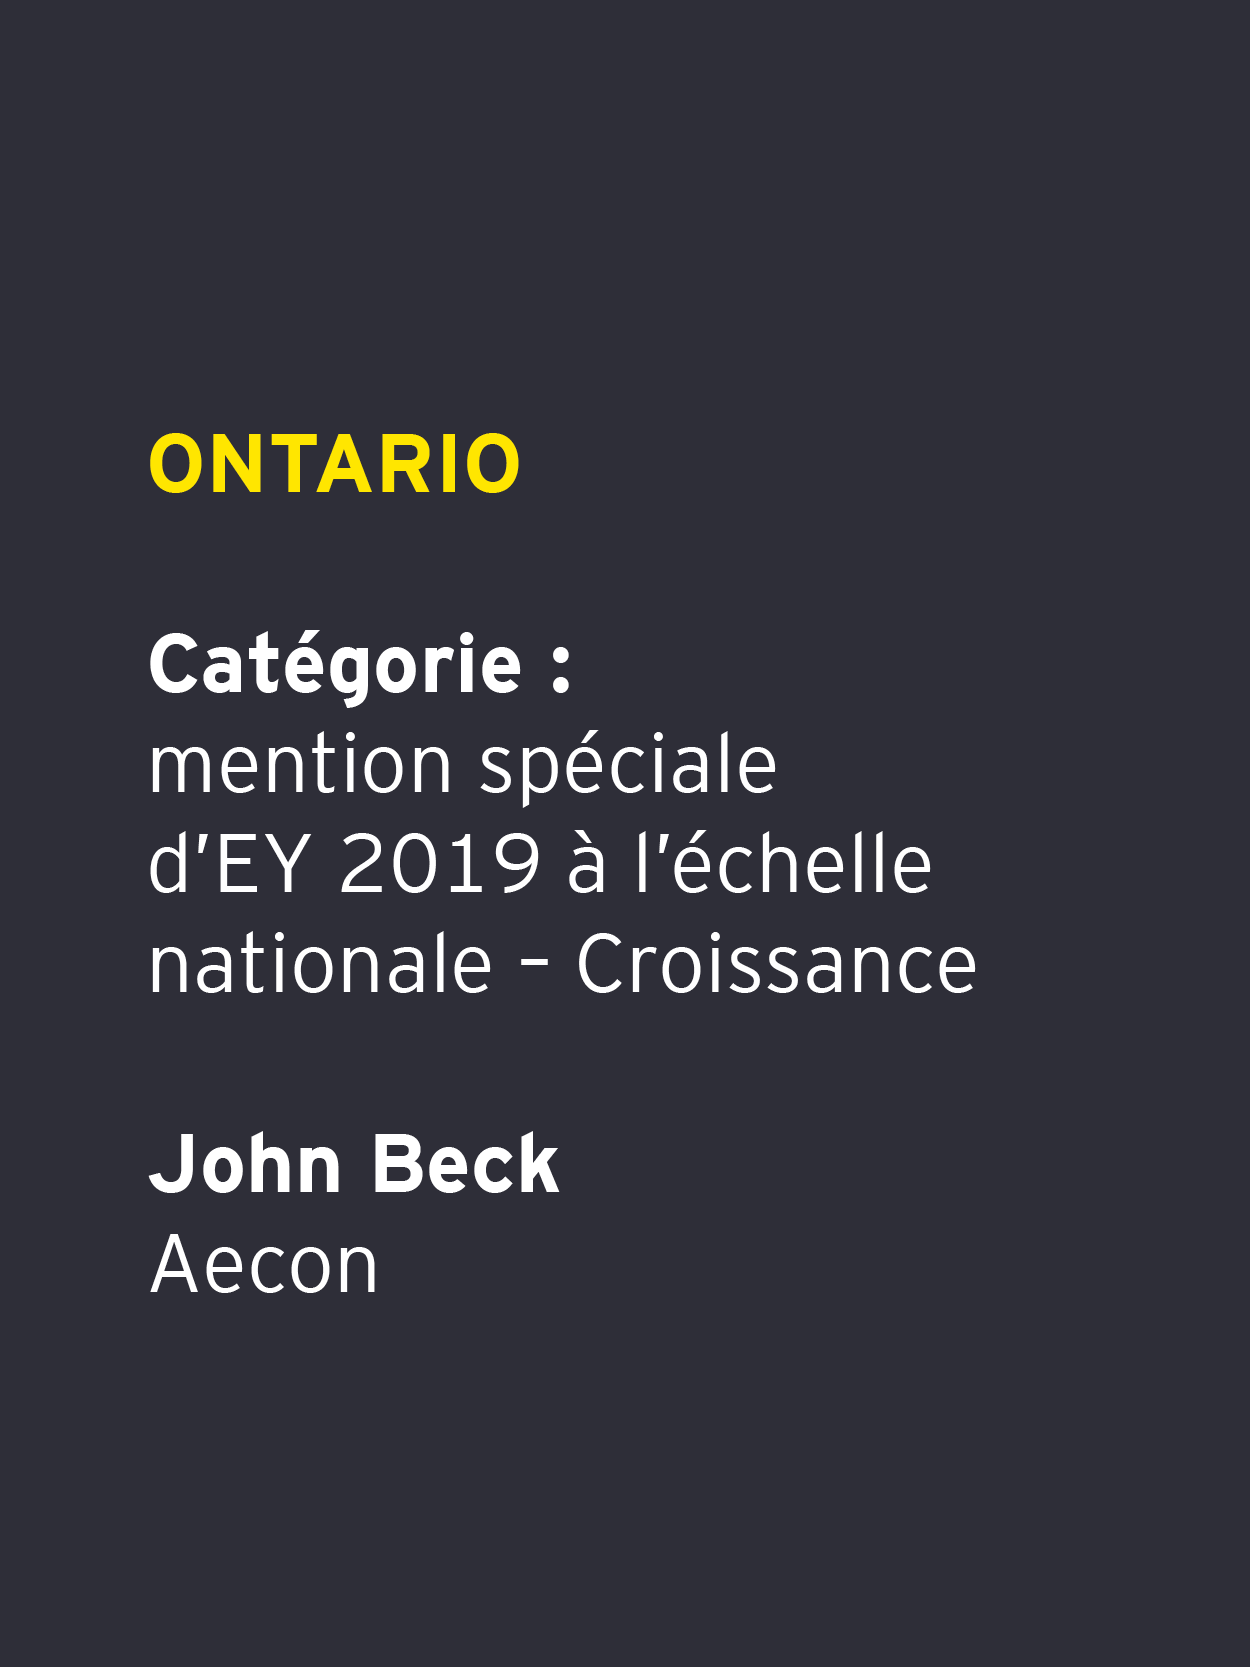             John Beck – Aecon        